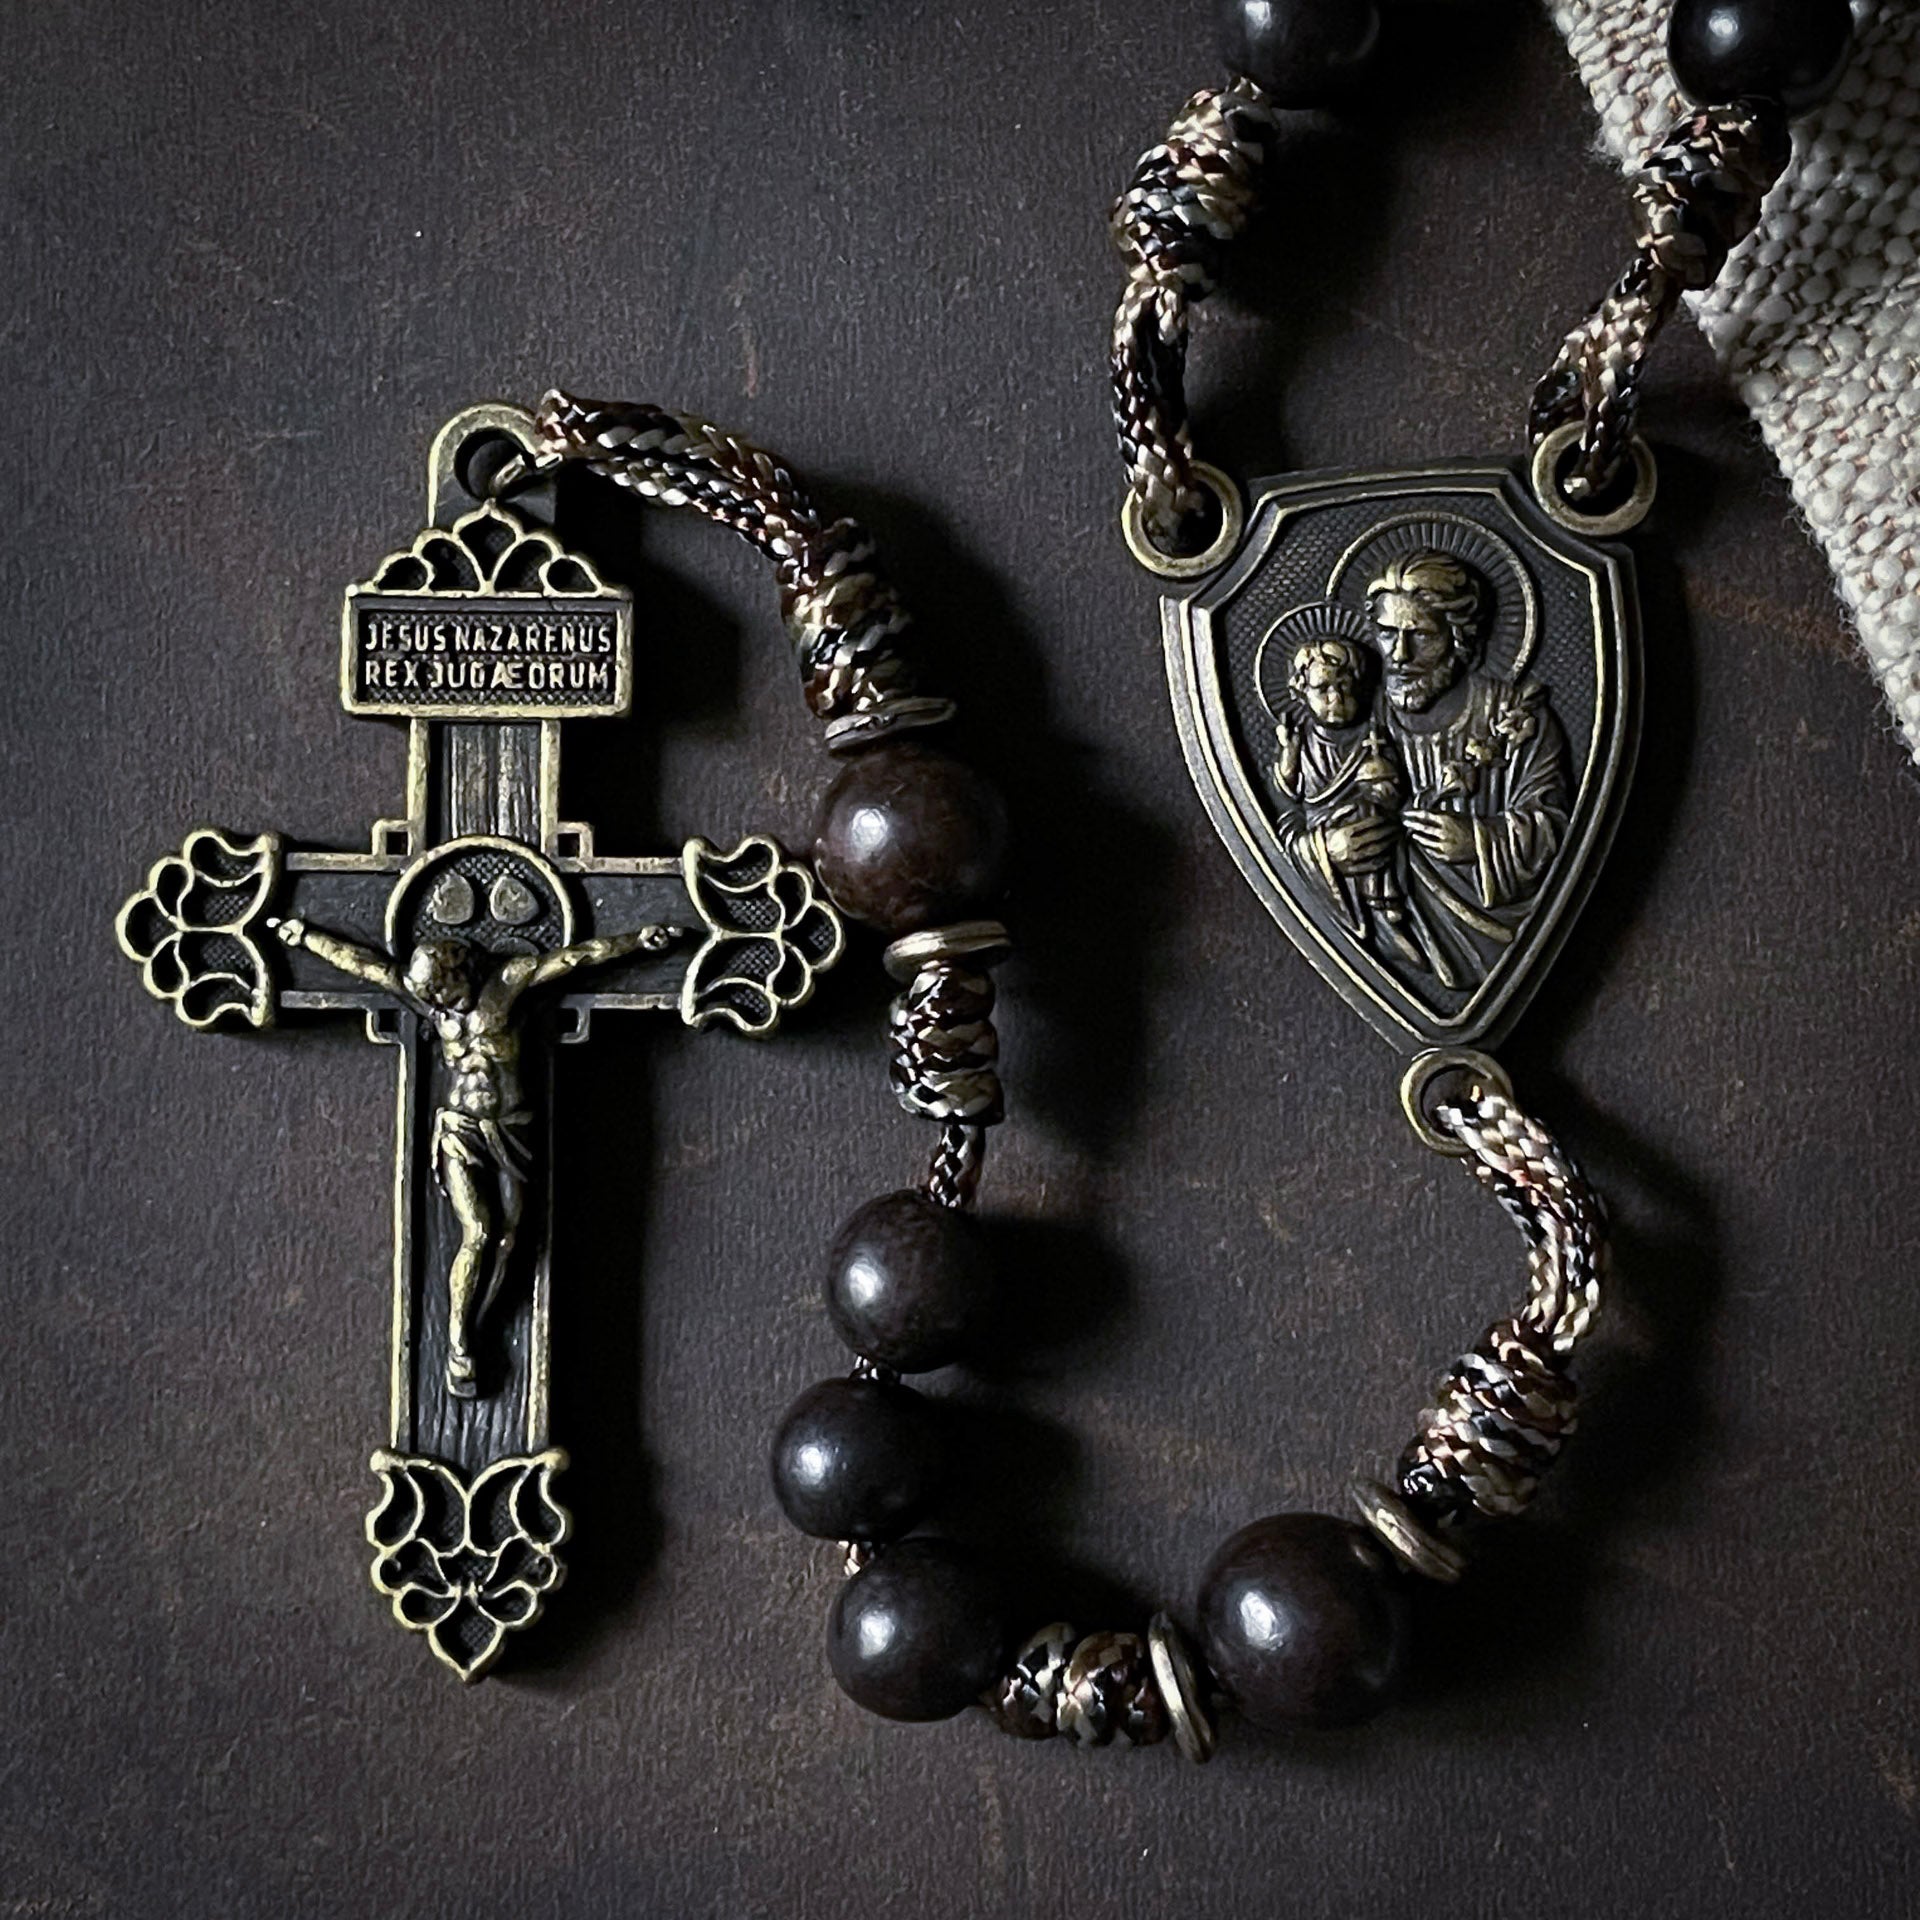 Handmade Wooden Rosary - Terror of Demons Design - Antique Bronze